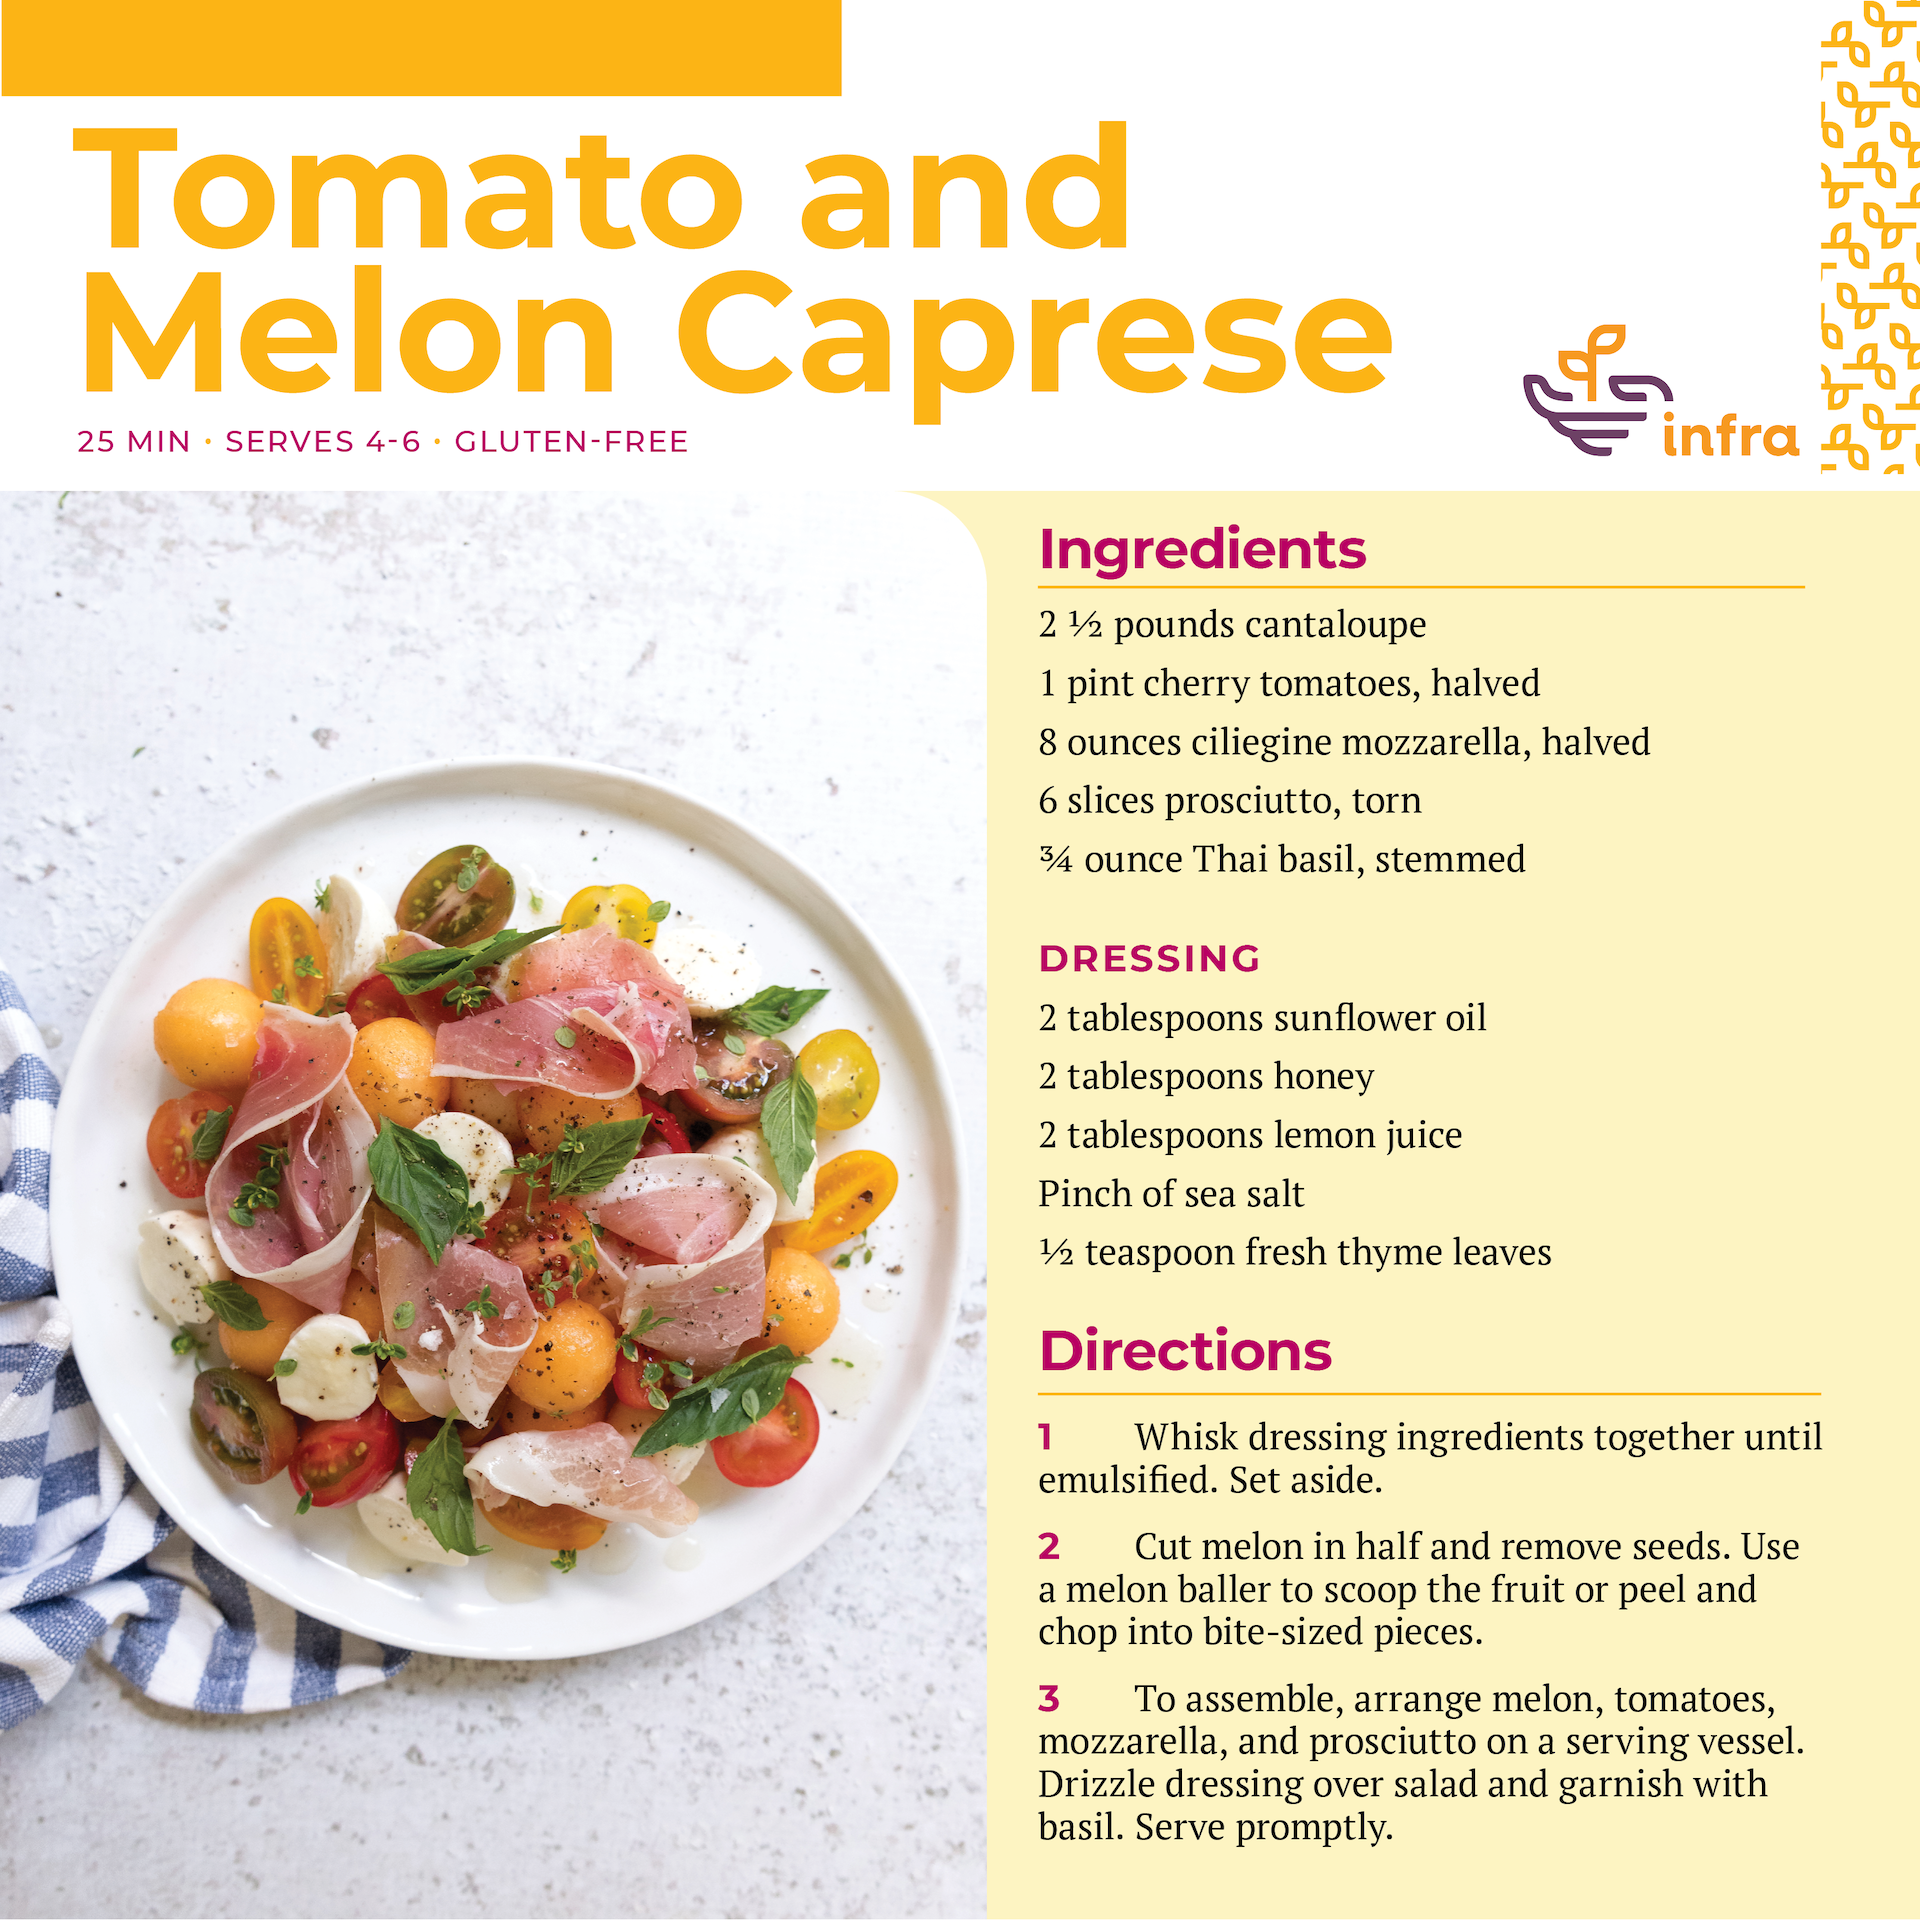 Tomato and Melon Caprese Image